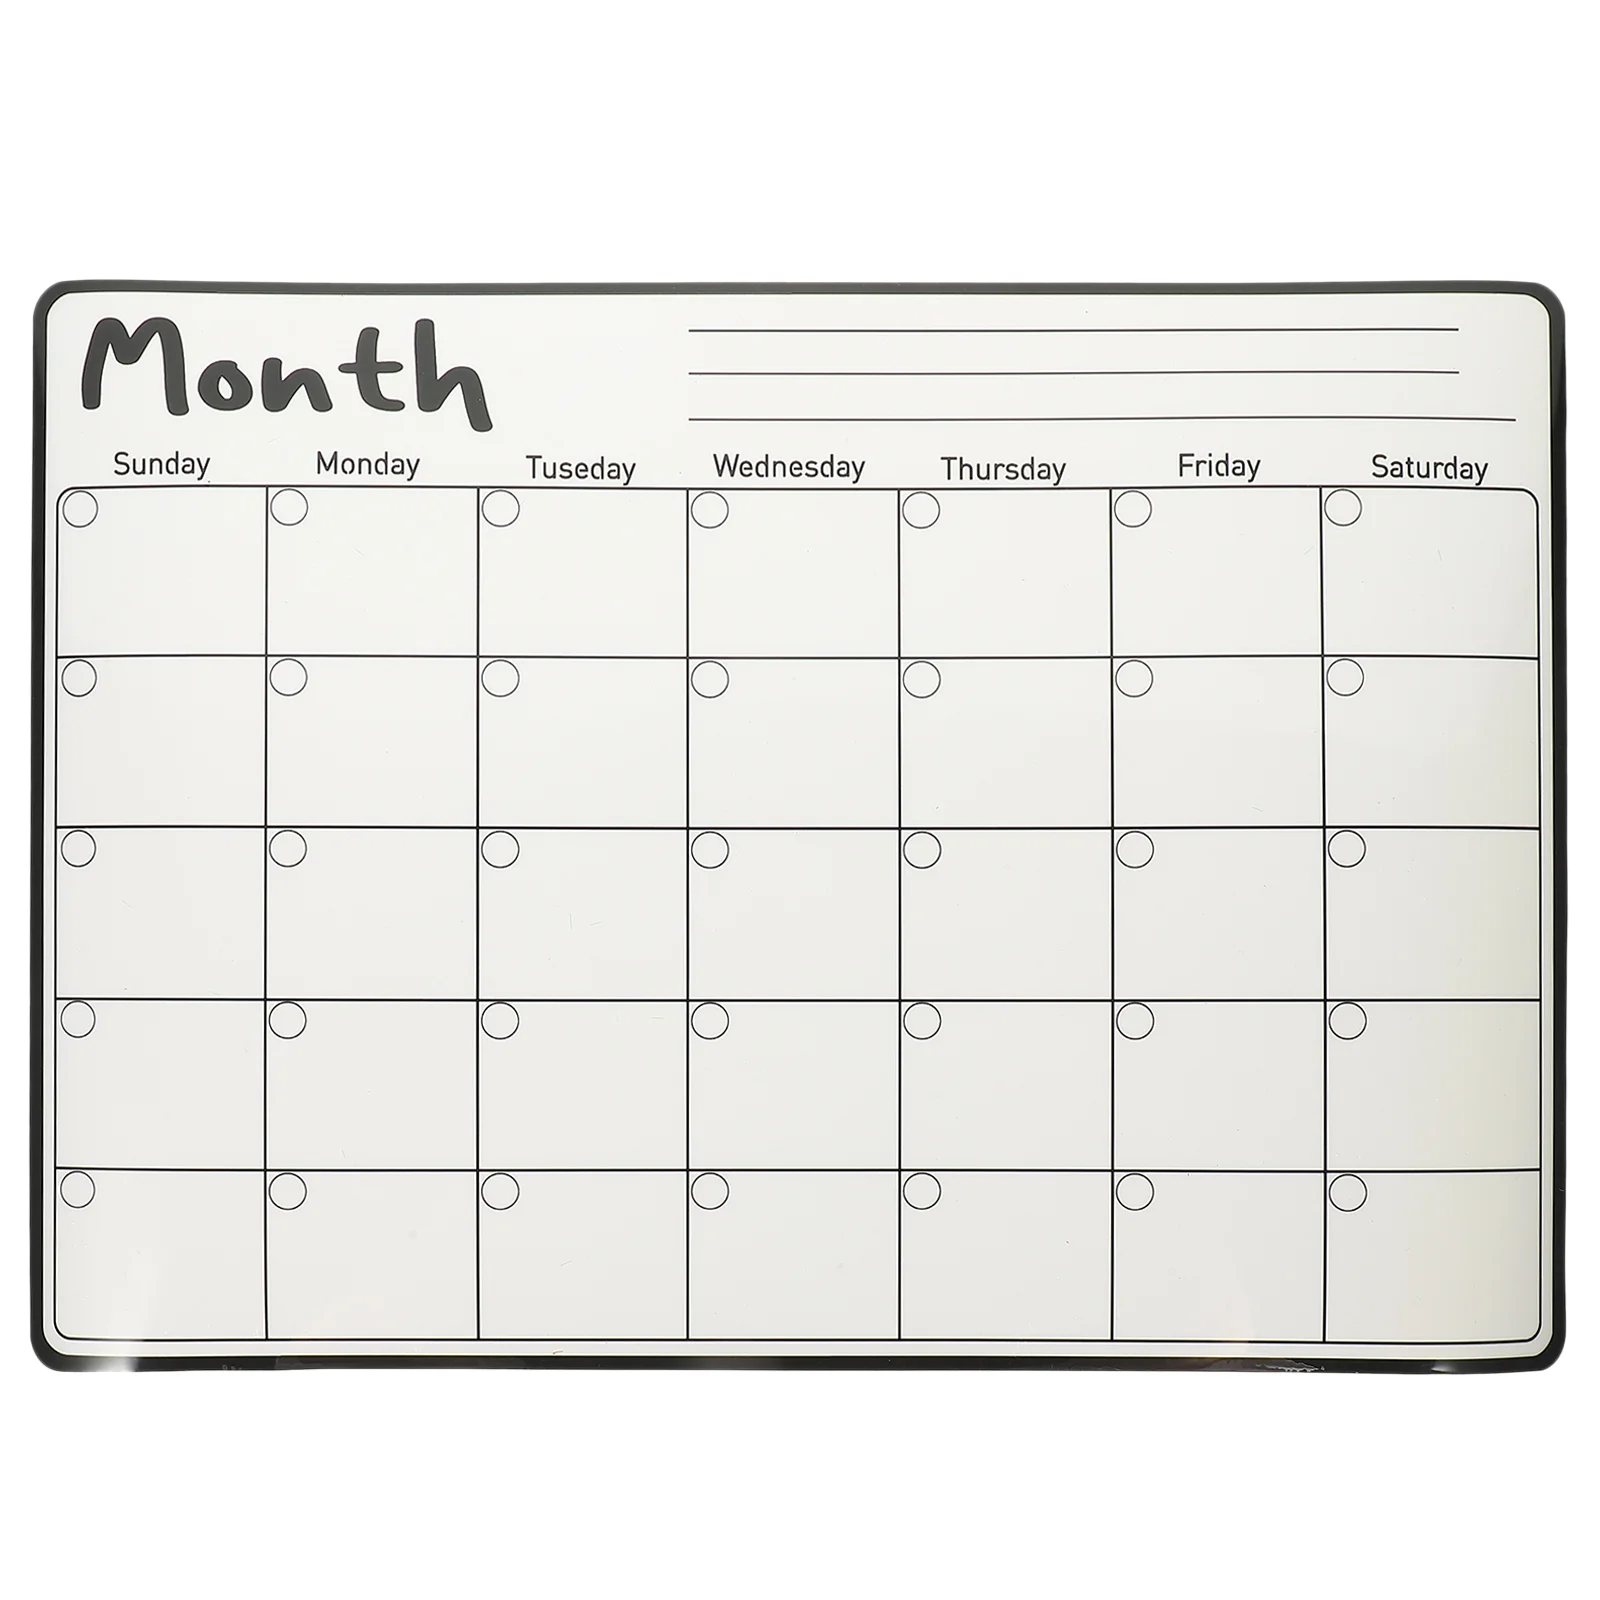 White Board Calendar Dry Erase Fridge Magnet Whiteboard Magnetic Monthly Planner